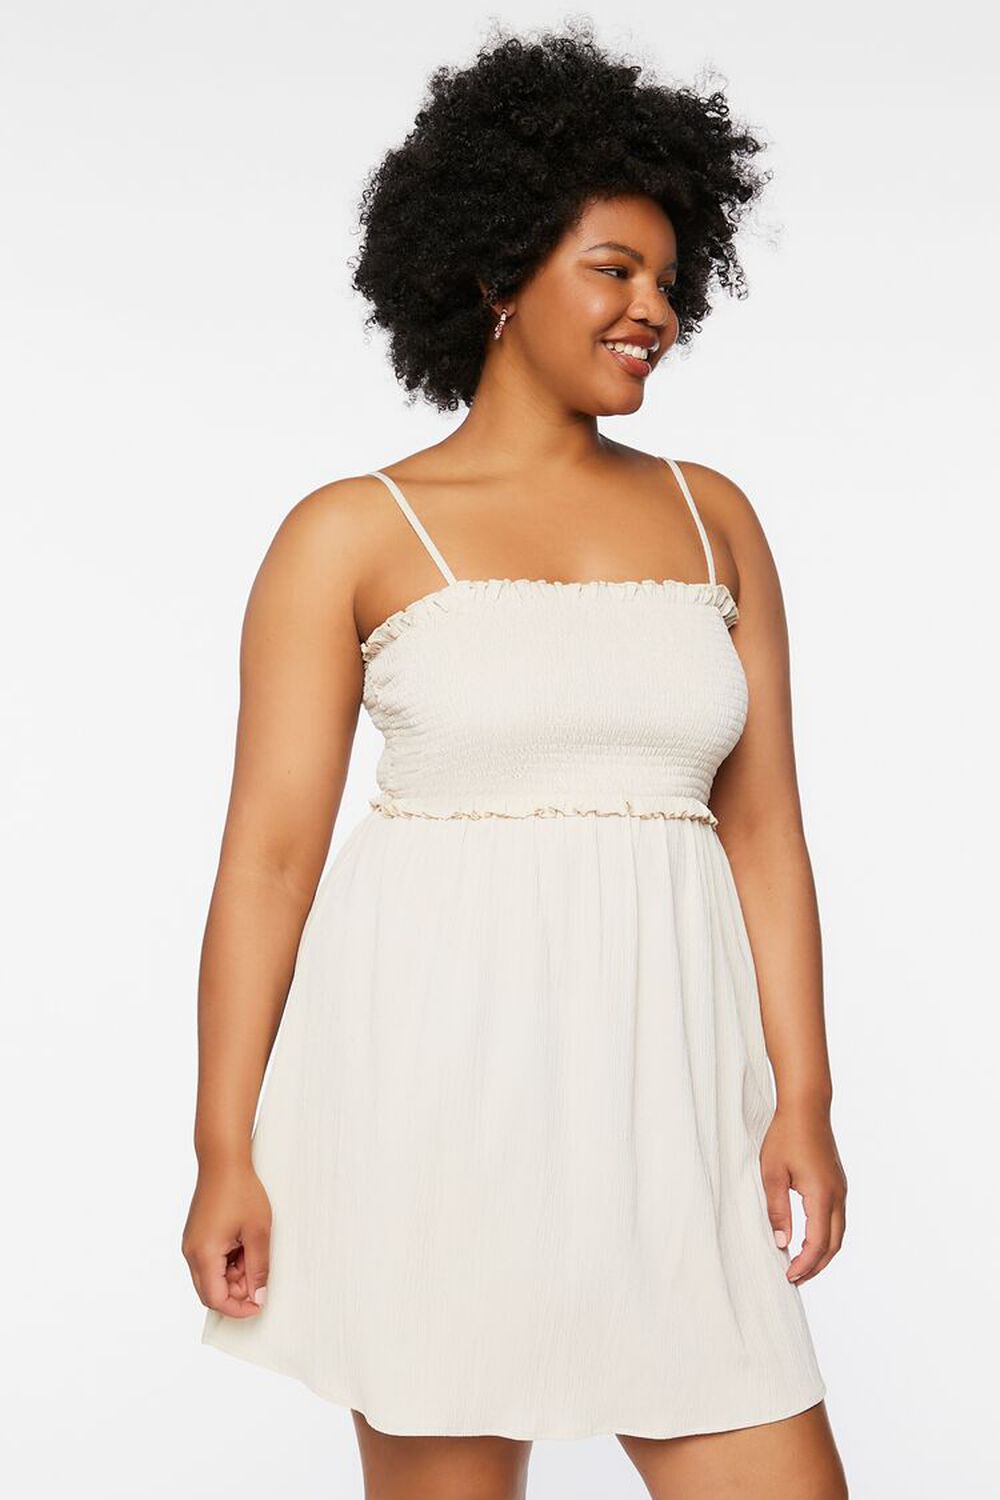 SANDSHELL Plus Size Ruffled Smocked Dress, image 1